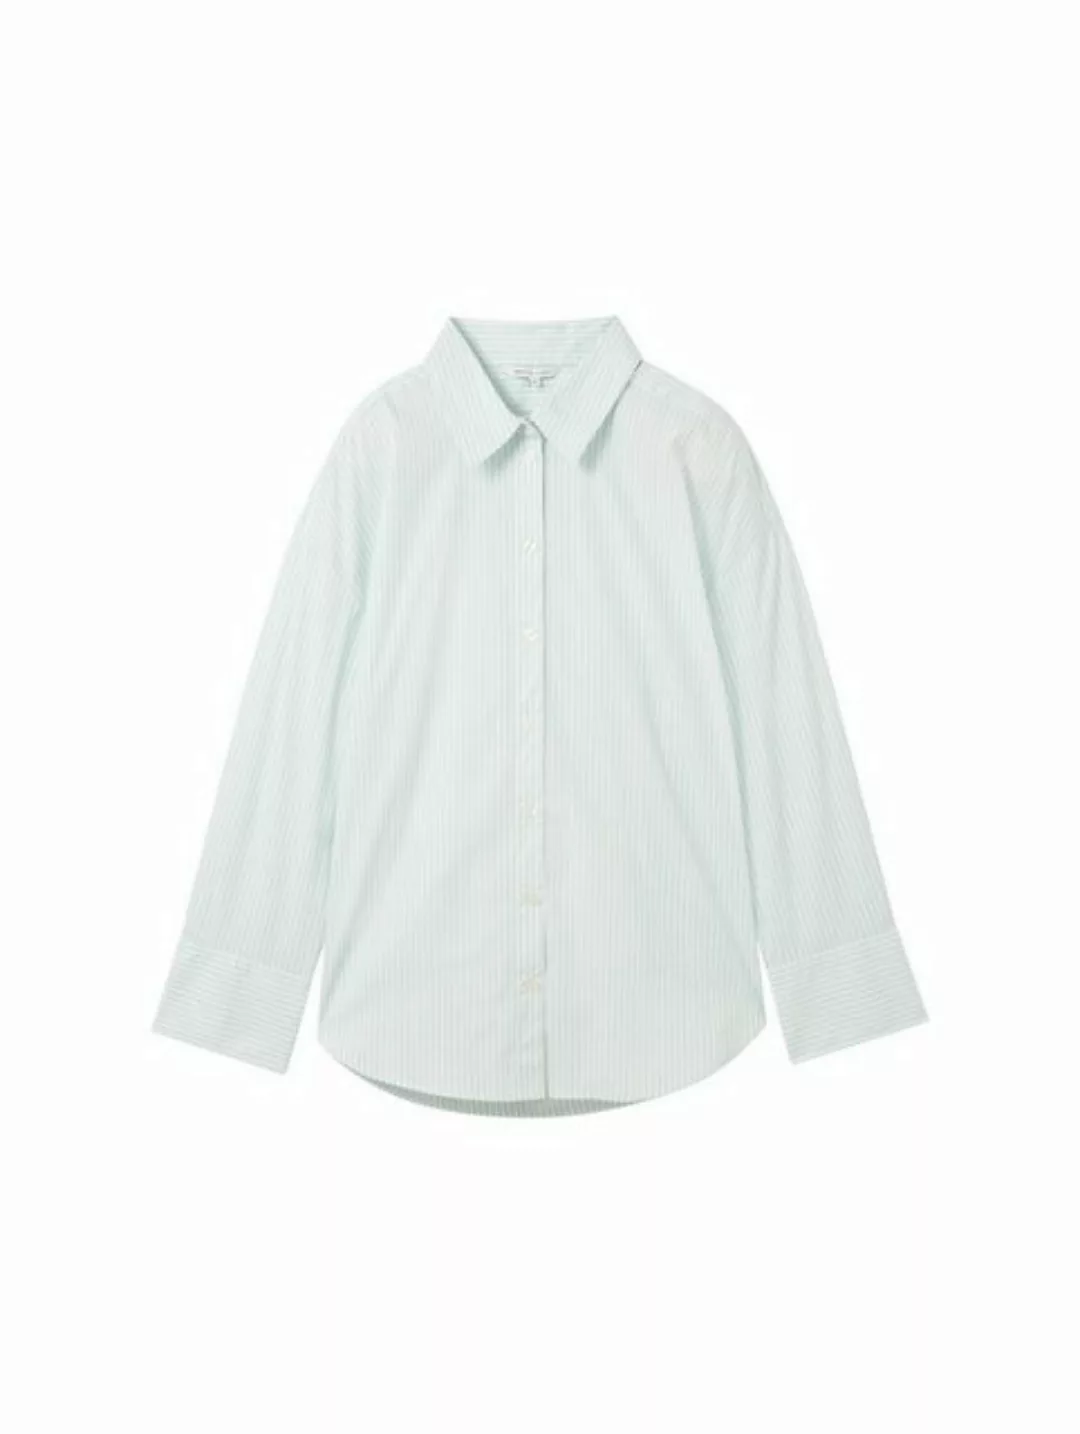 TOM TAILOR Denim Blusenshirt striped poplin shirt günstig online kaufen